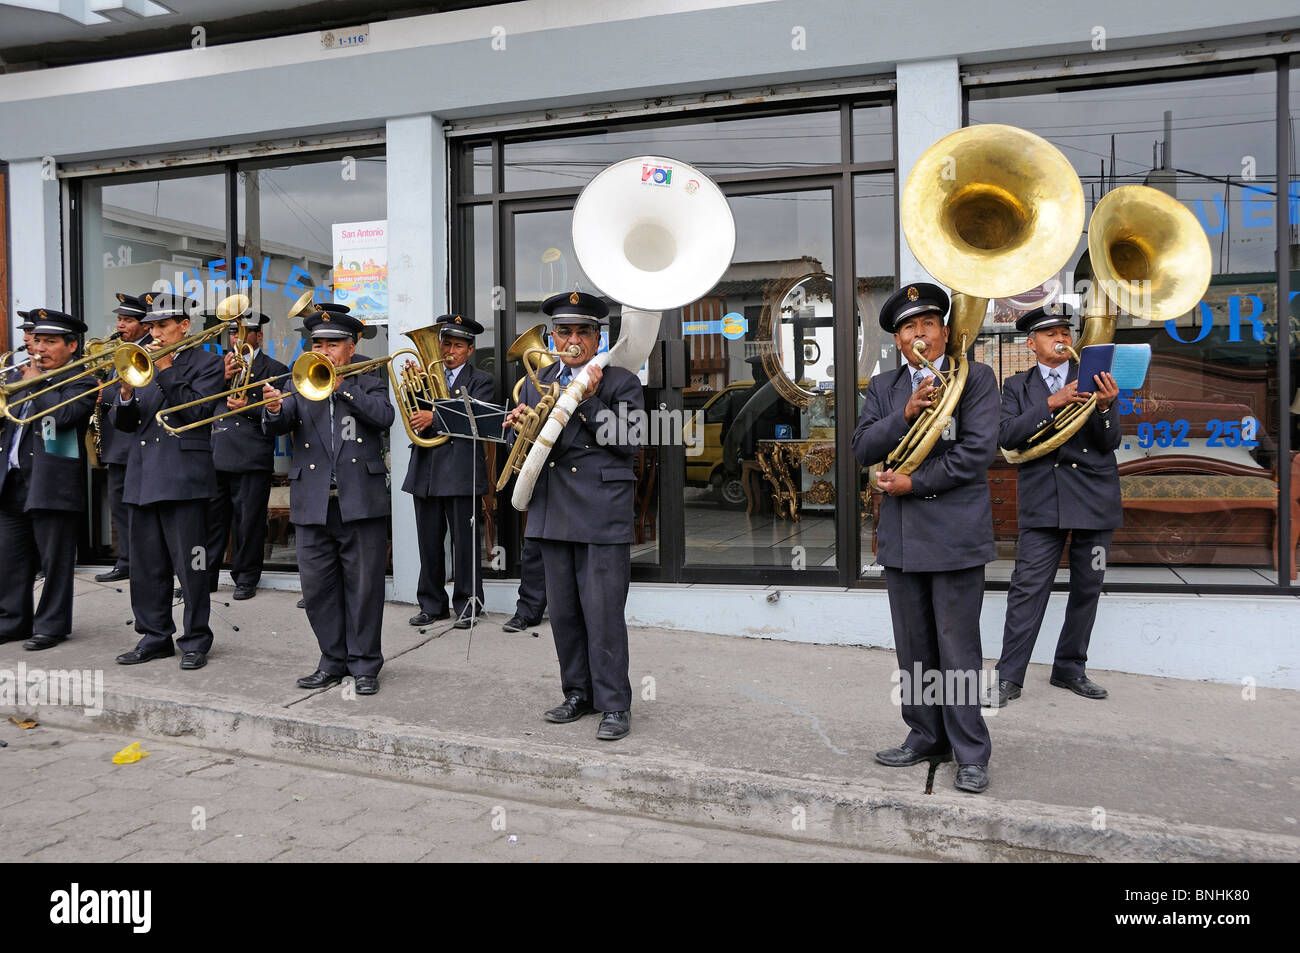 Groupe de musique militaire équatorien Ibarra ville des Andes musiciens uniforms personnes groupe concert men Banque D'Images